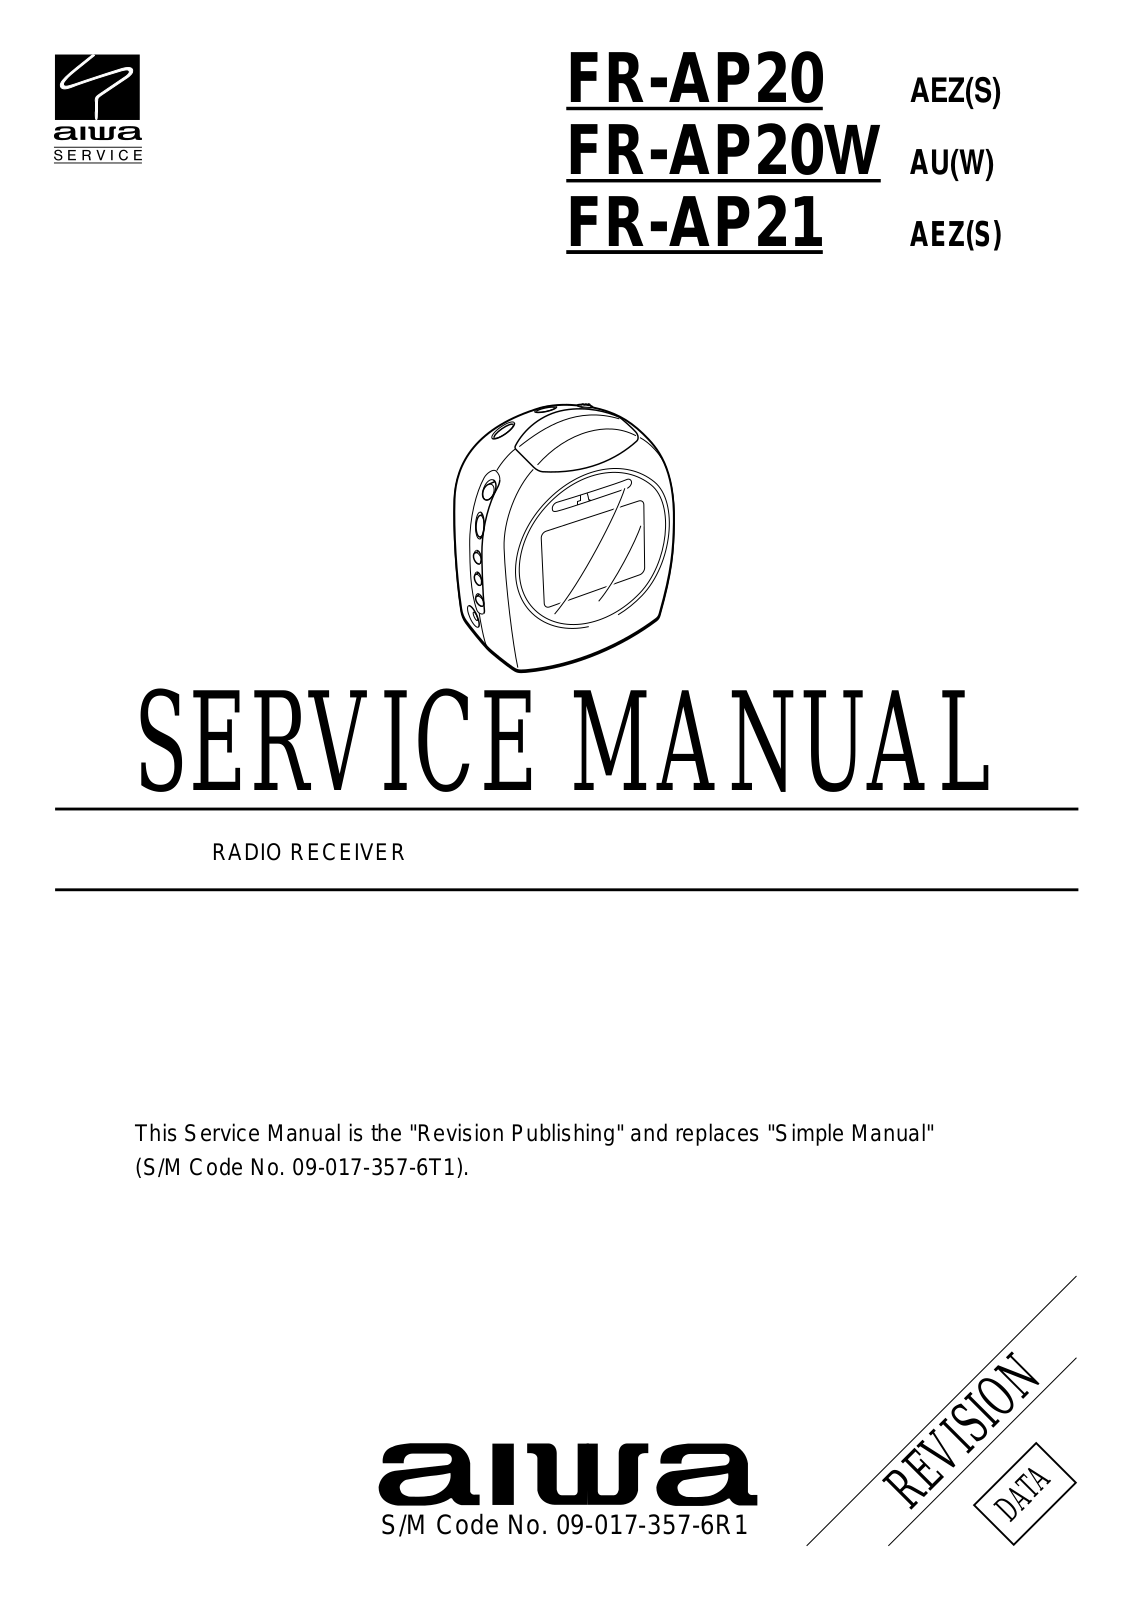 Aiwa FR-AP20, FR-AP21 Service Manual